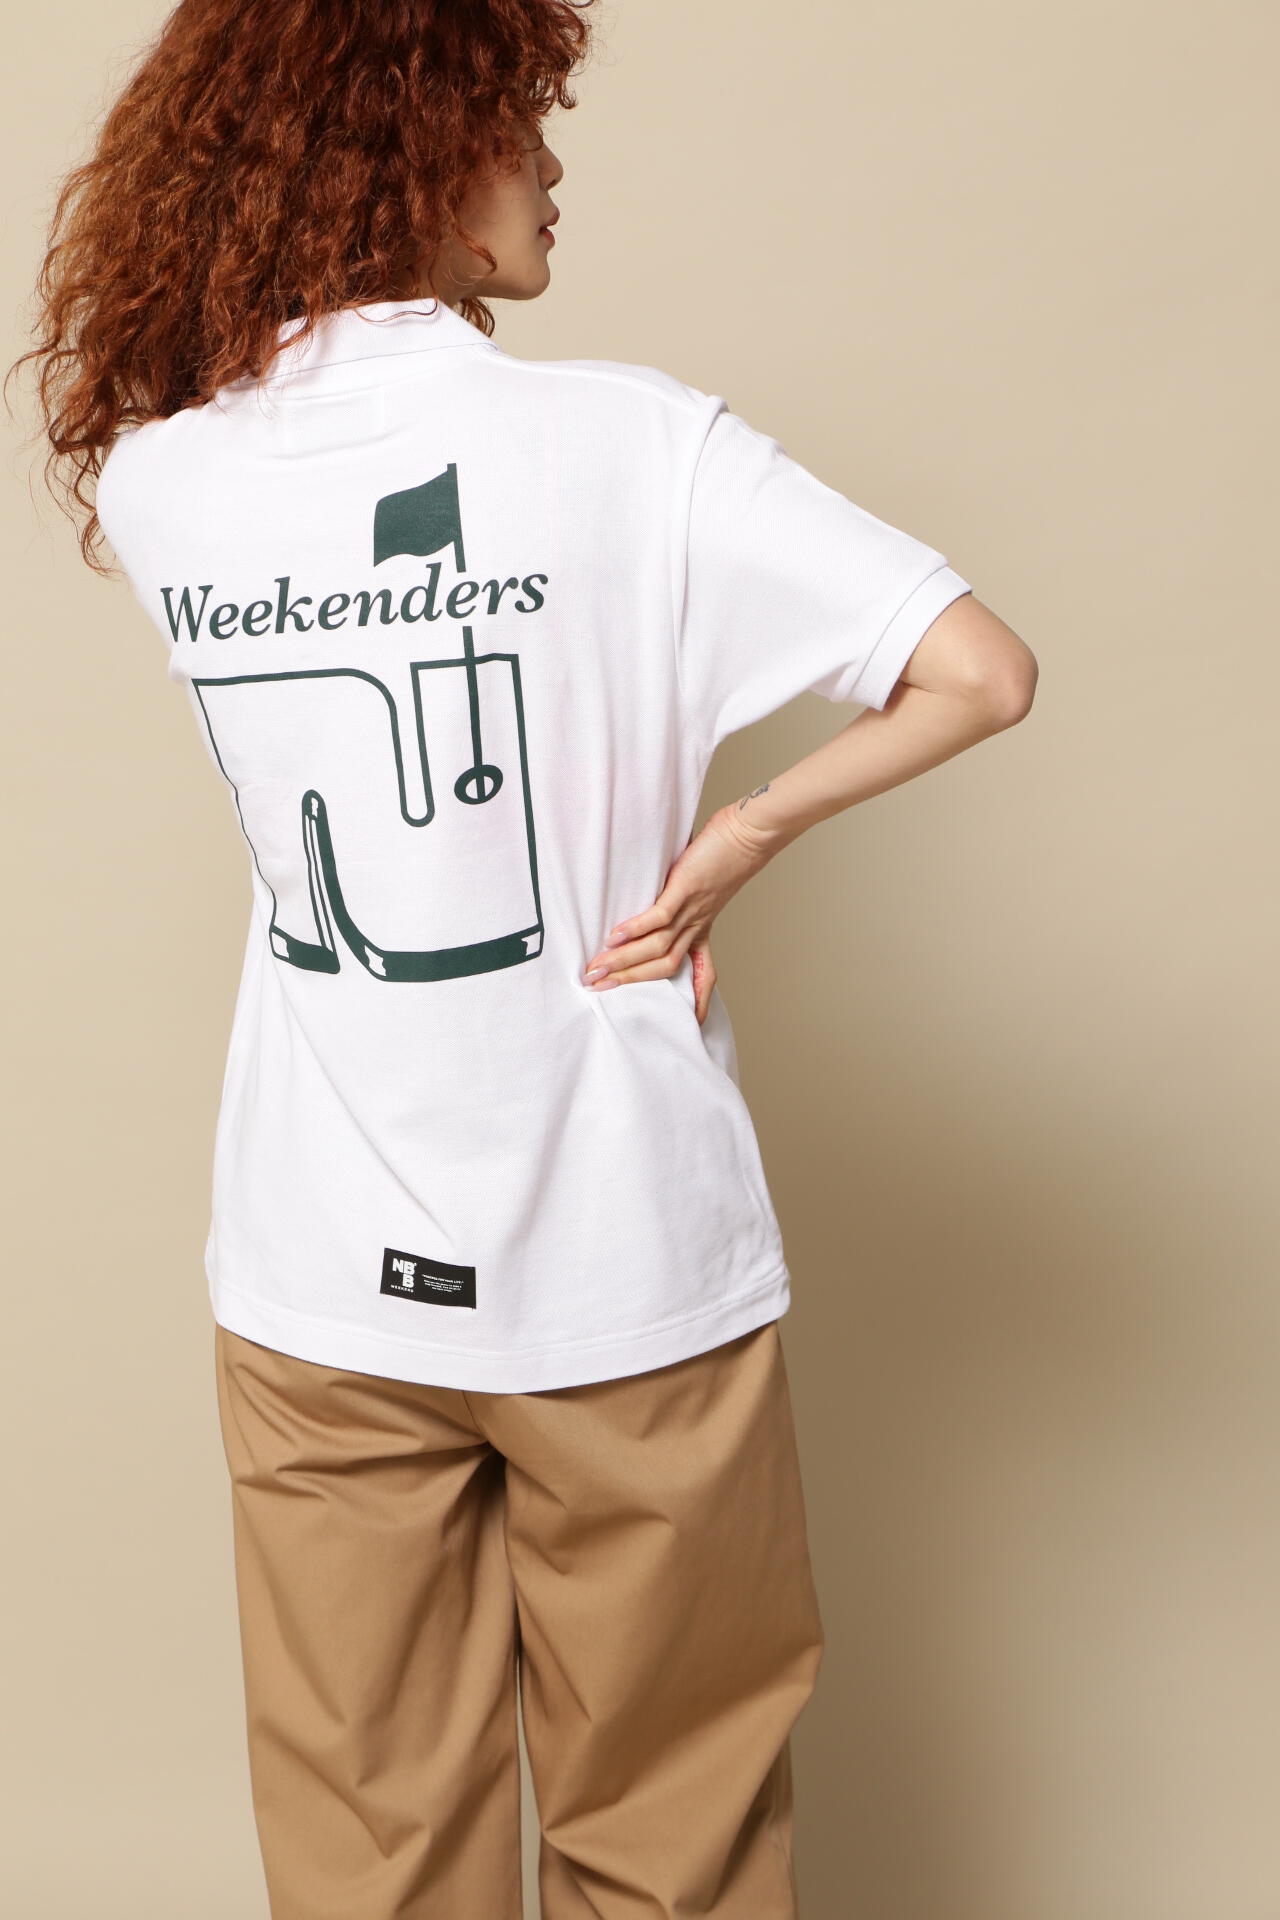 NBB WEEKEND】Weekenders ポロシャツ (LADIES)